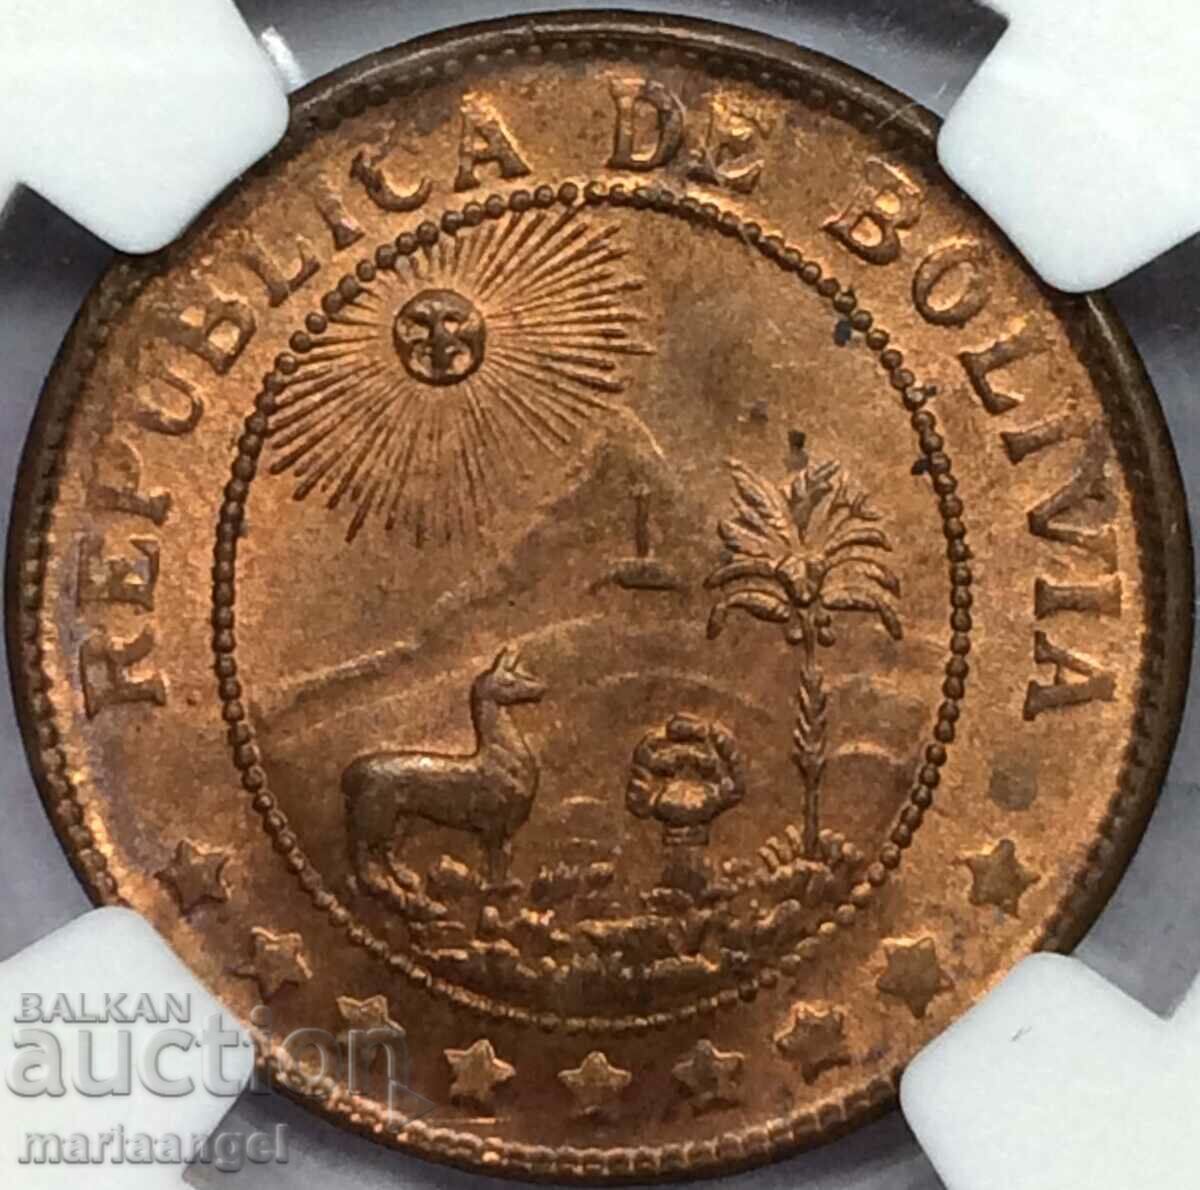 Bolivia 1942 50 de cenți NGC MS 65 Restrike